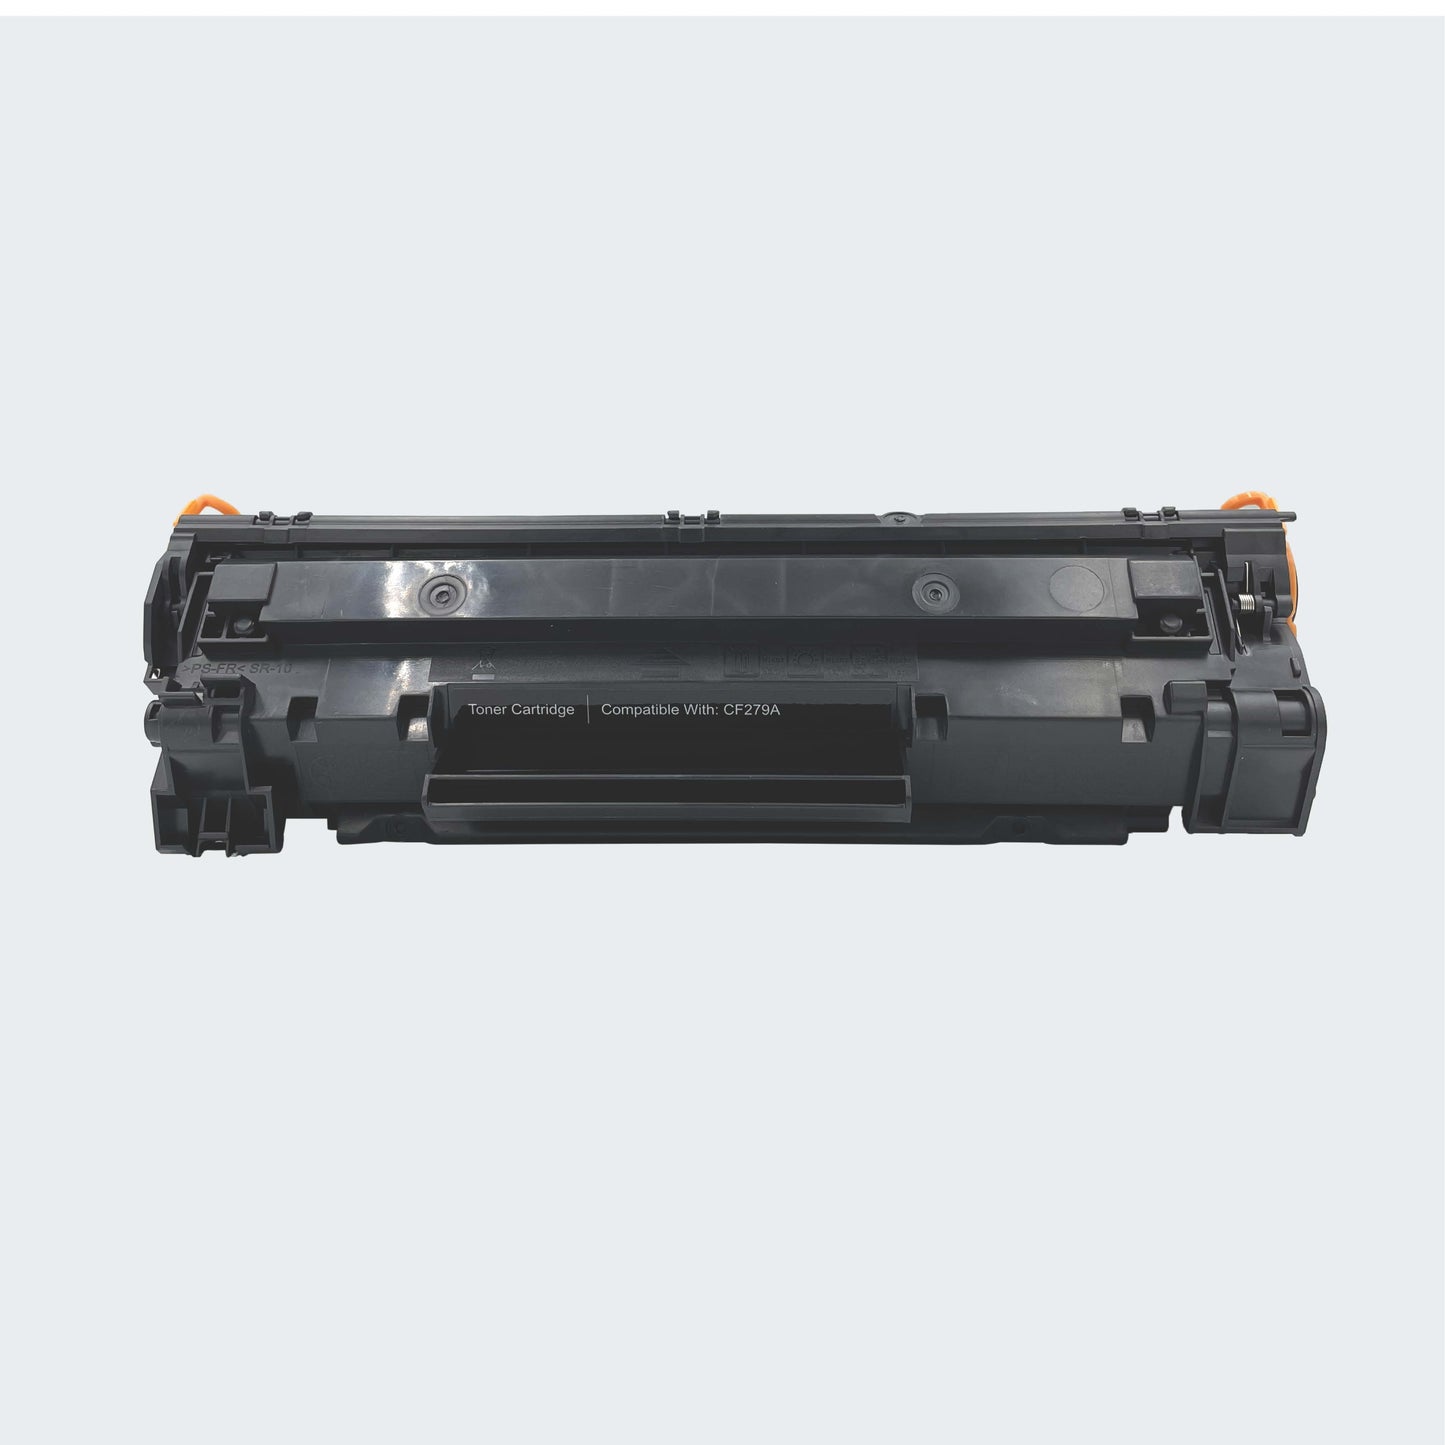 CRE8 | Compatible HP 79A Black LaserJet Toner Cartridge (CF 279A)